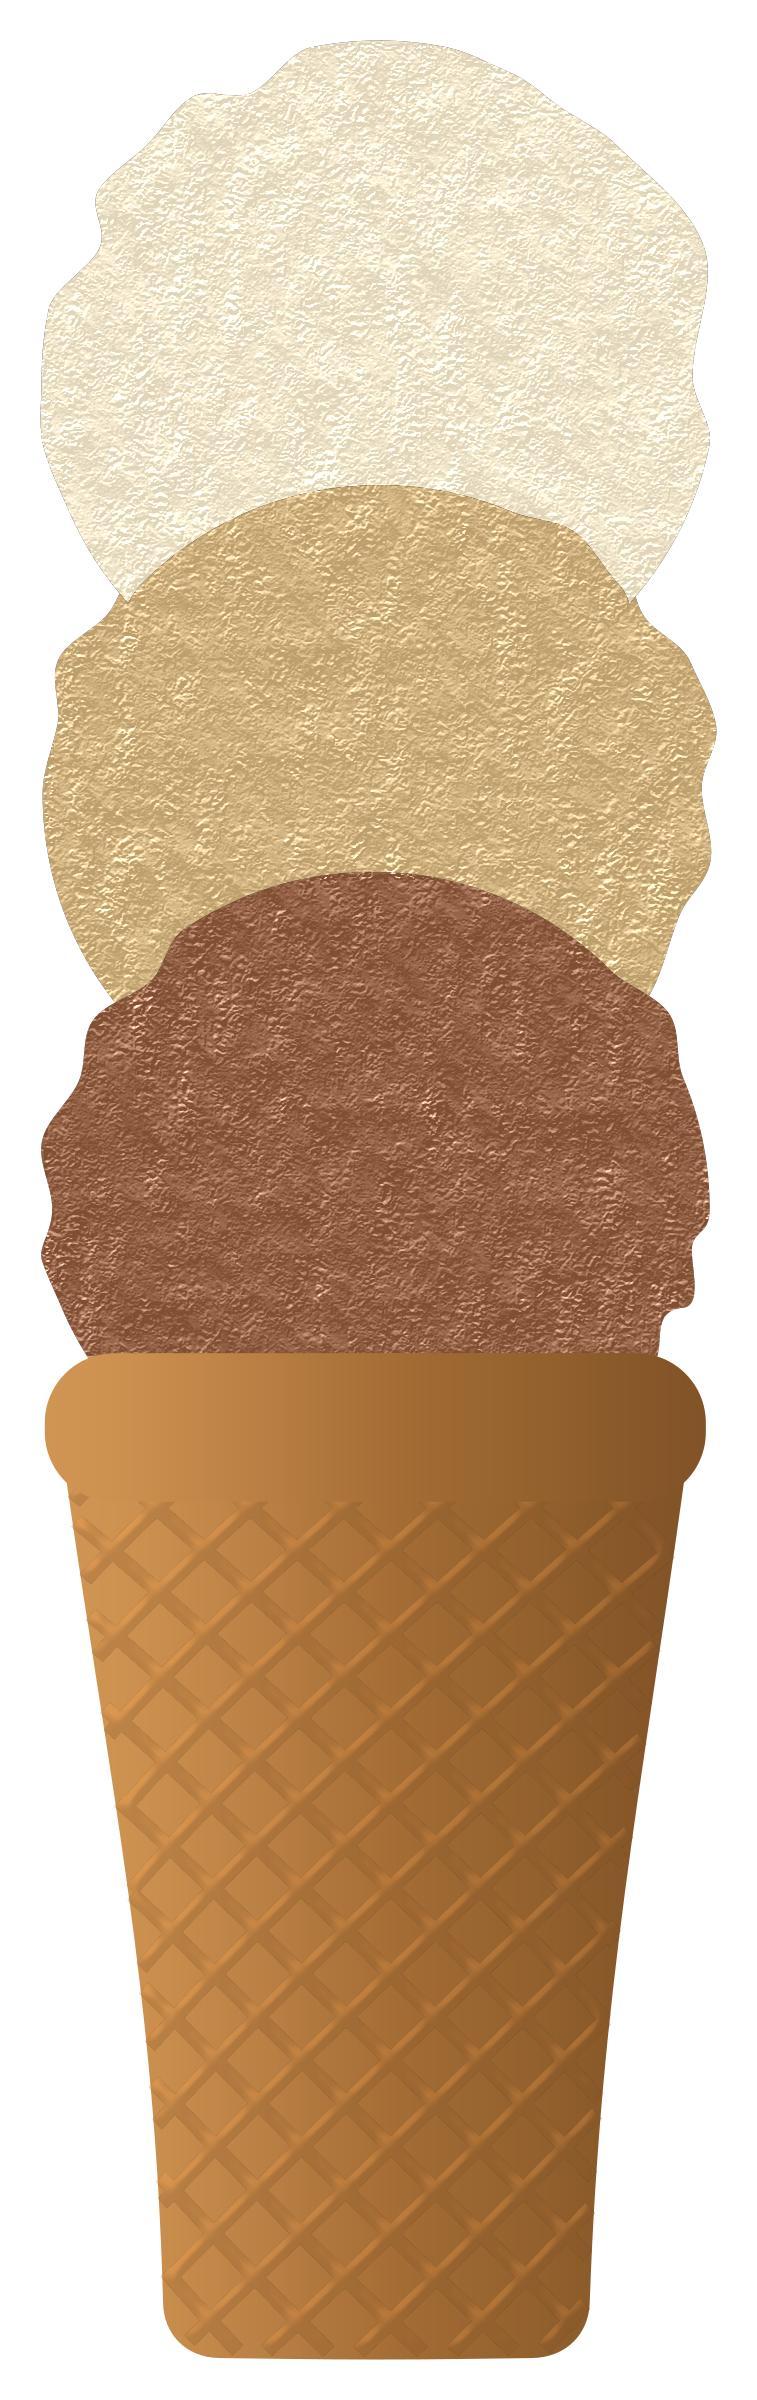 Ice cream cone png transparent